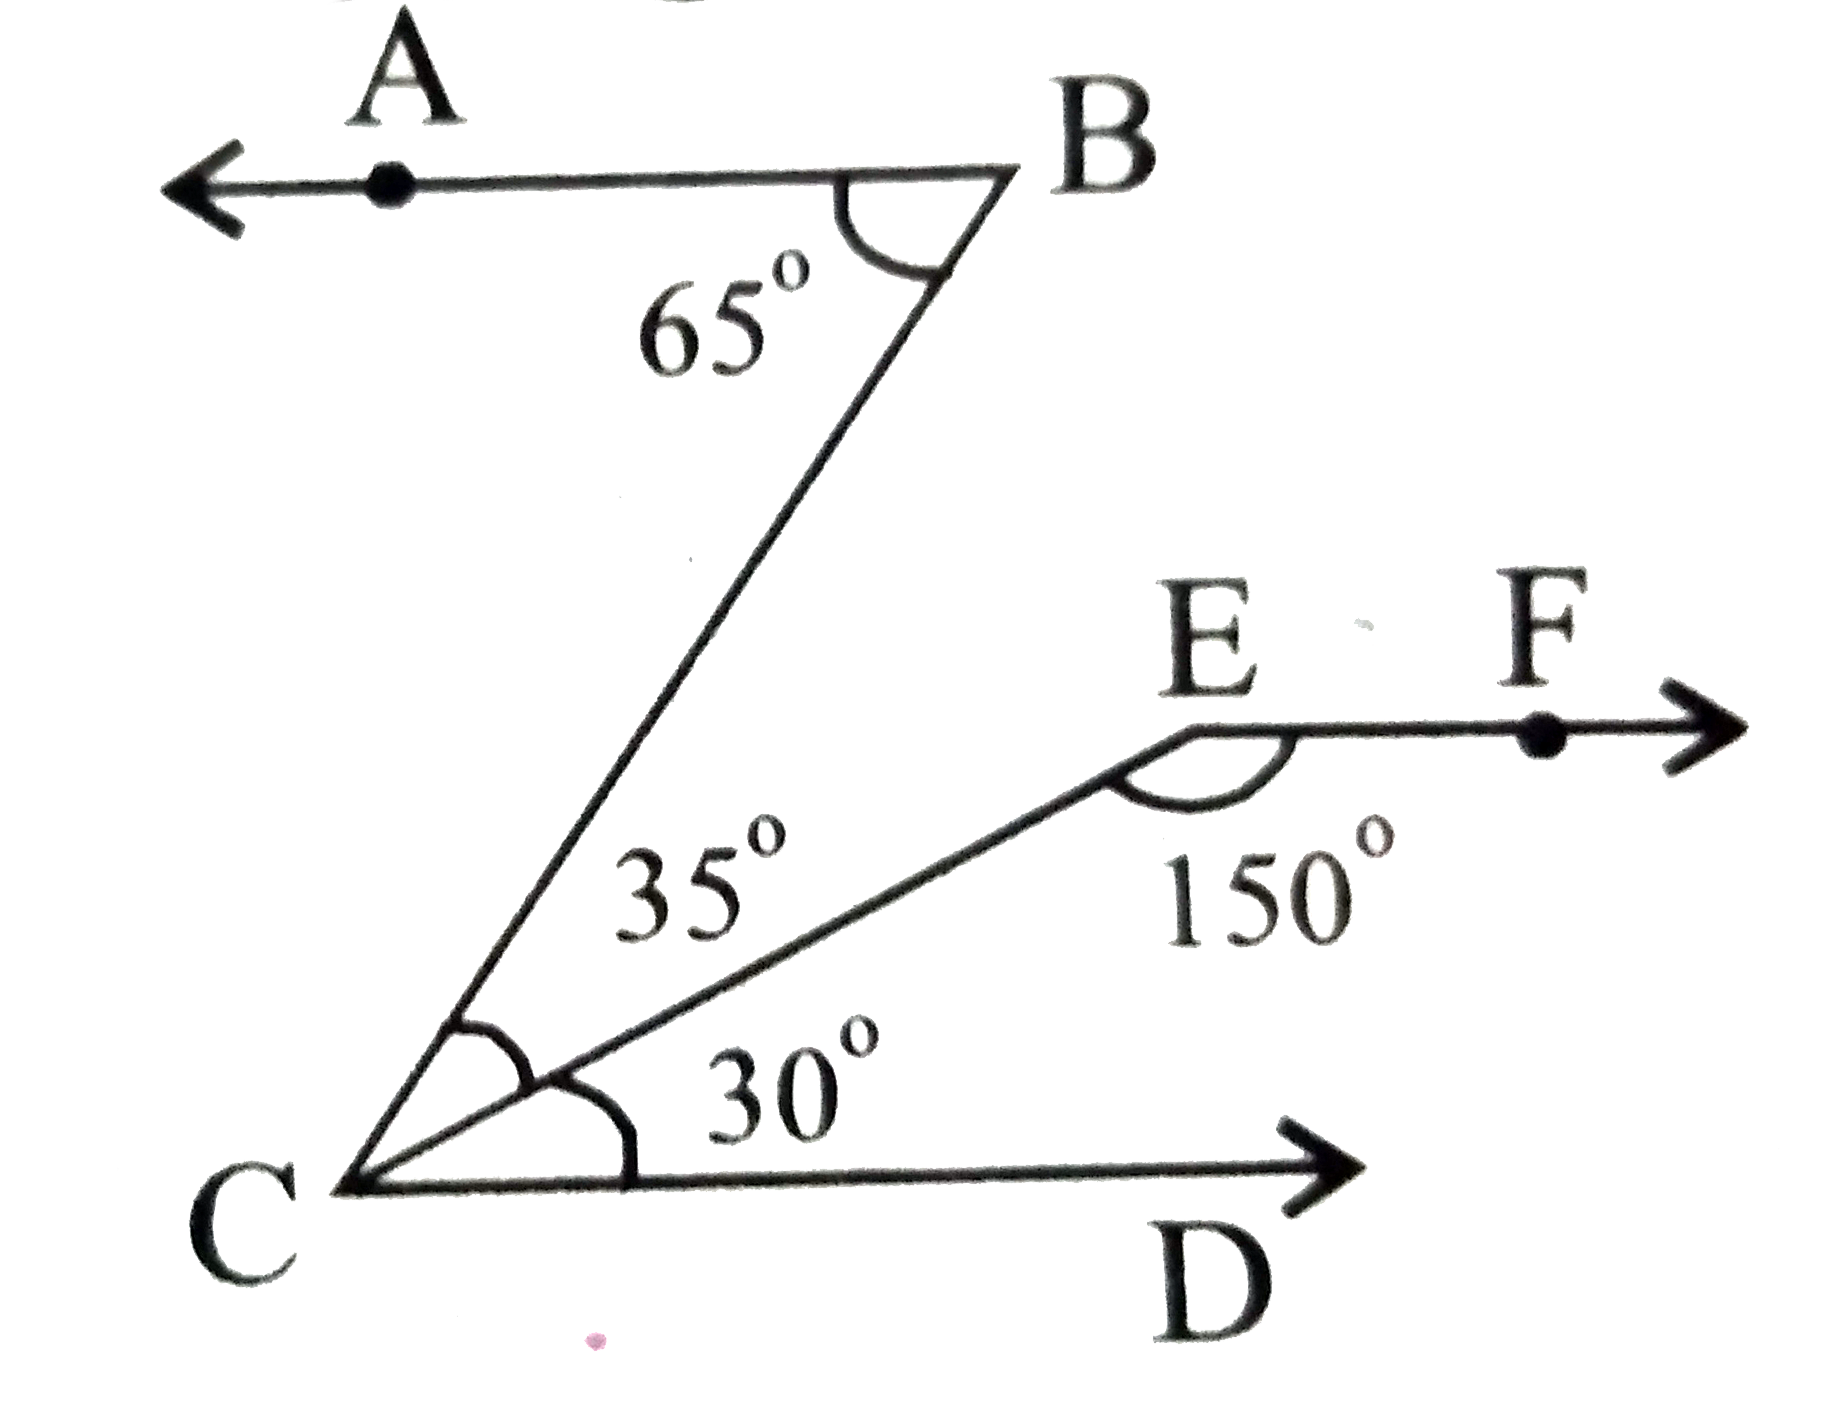 नीचे की आकृति में दिखायें कि रेखा AB||EF है।